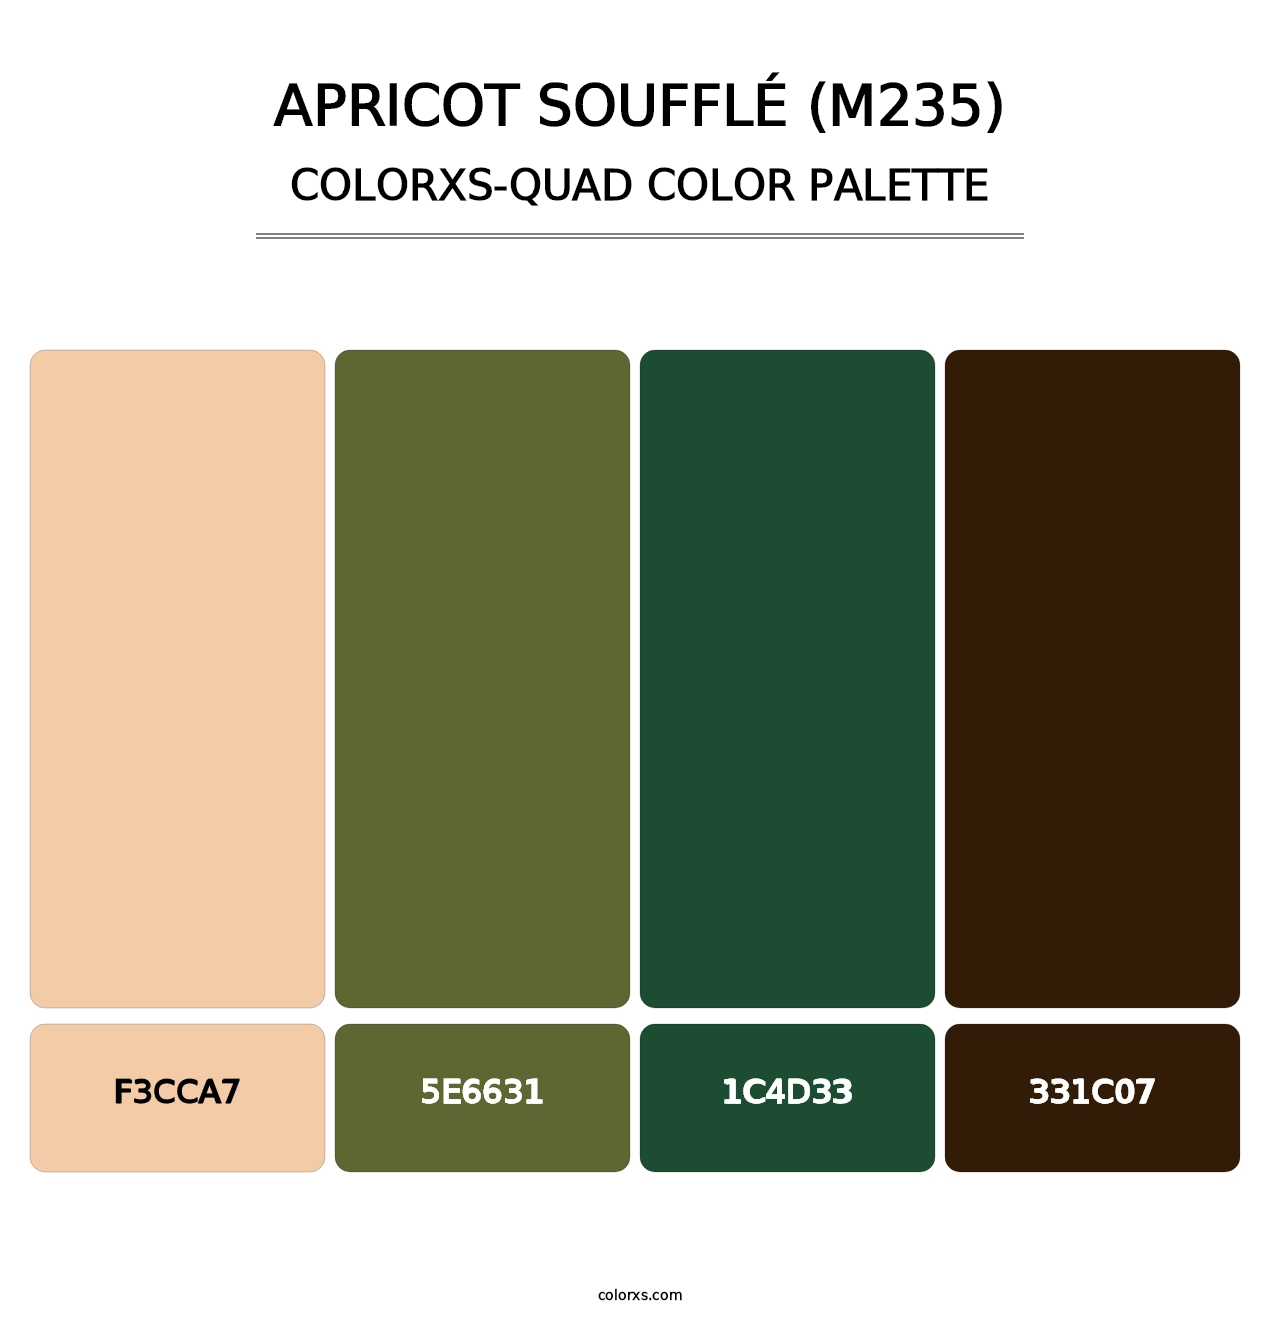 Apricot Soufflé (M235) - Colorxs Quad Palette